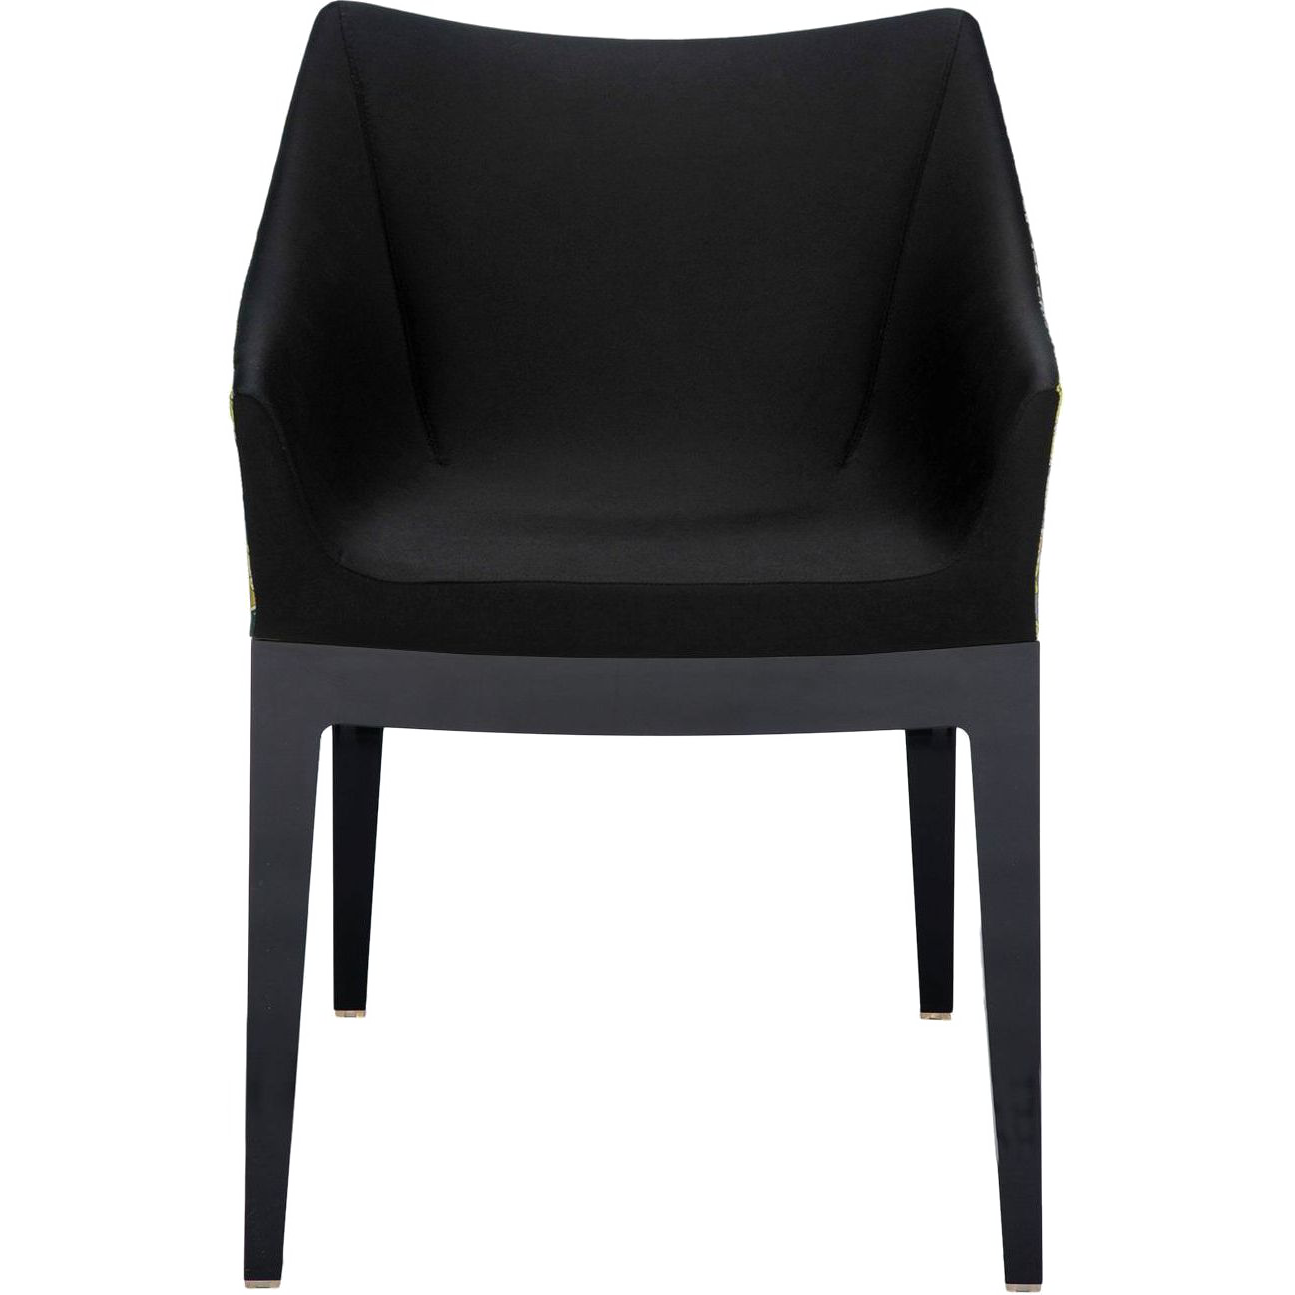 Стул стал черным. Стул Sandro черного цвета IMR- 1205210. Черные стулья для кухни. Стул мягкий черный. Стильные черные стулья.